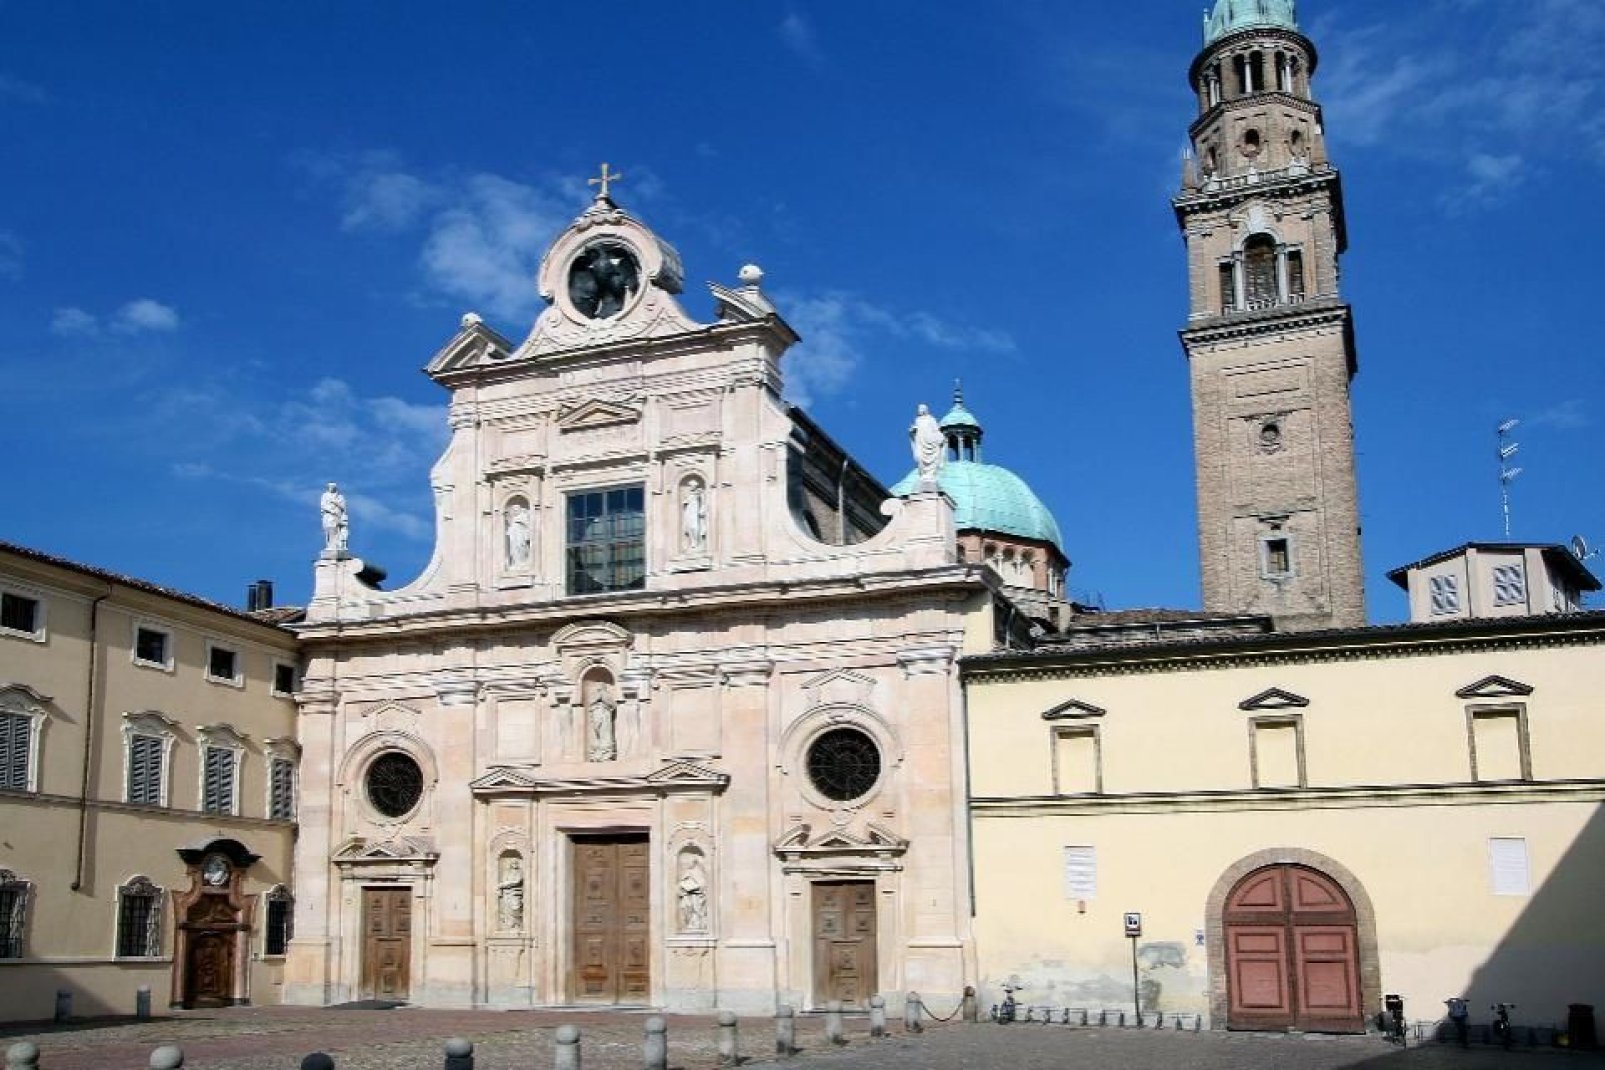 Parma, wie auch zahlreiche andere Städte der Region, ist von Bogengängen durchzogen.